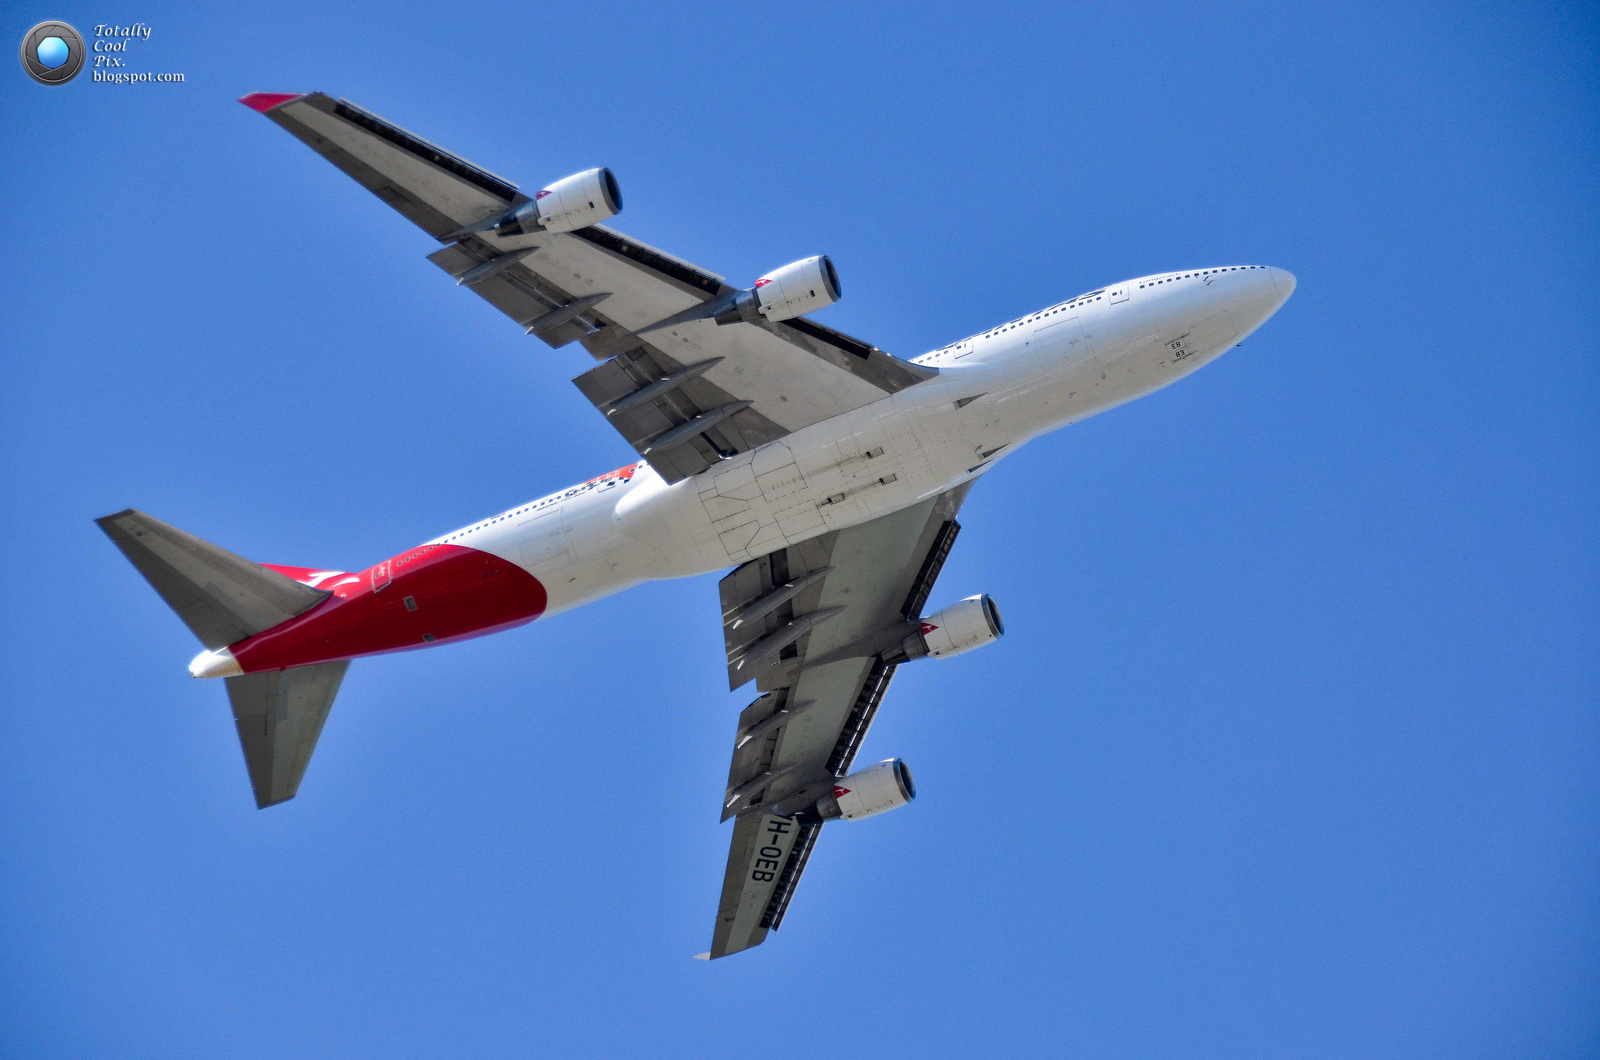 hd pics blogg: Wallpaper Qantas